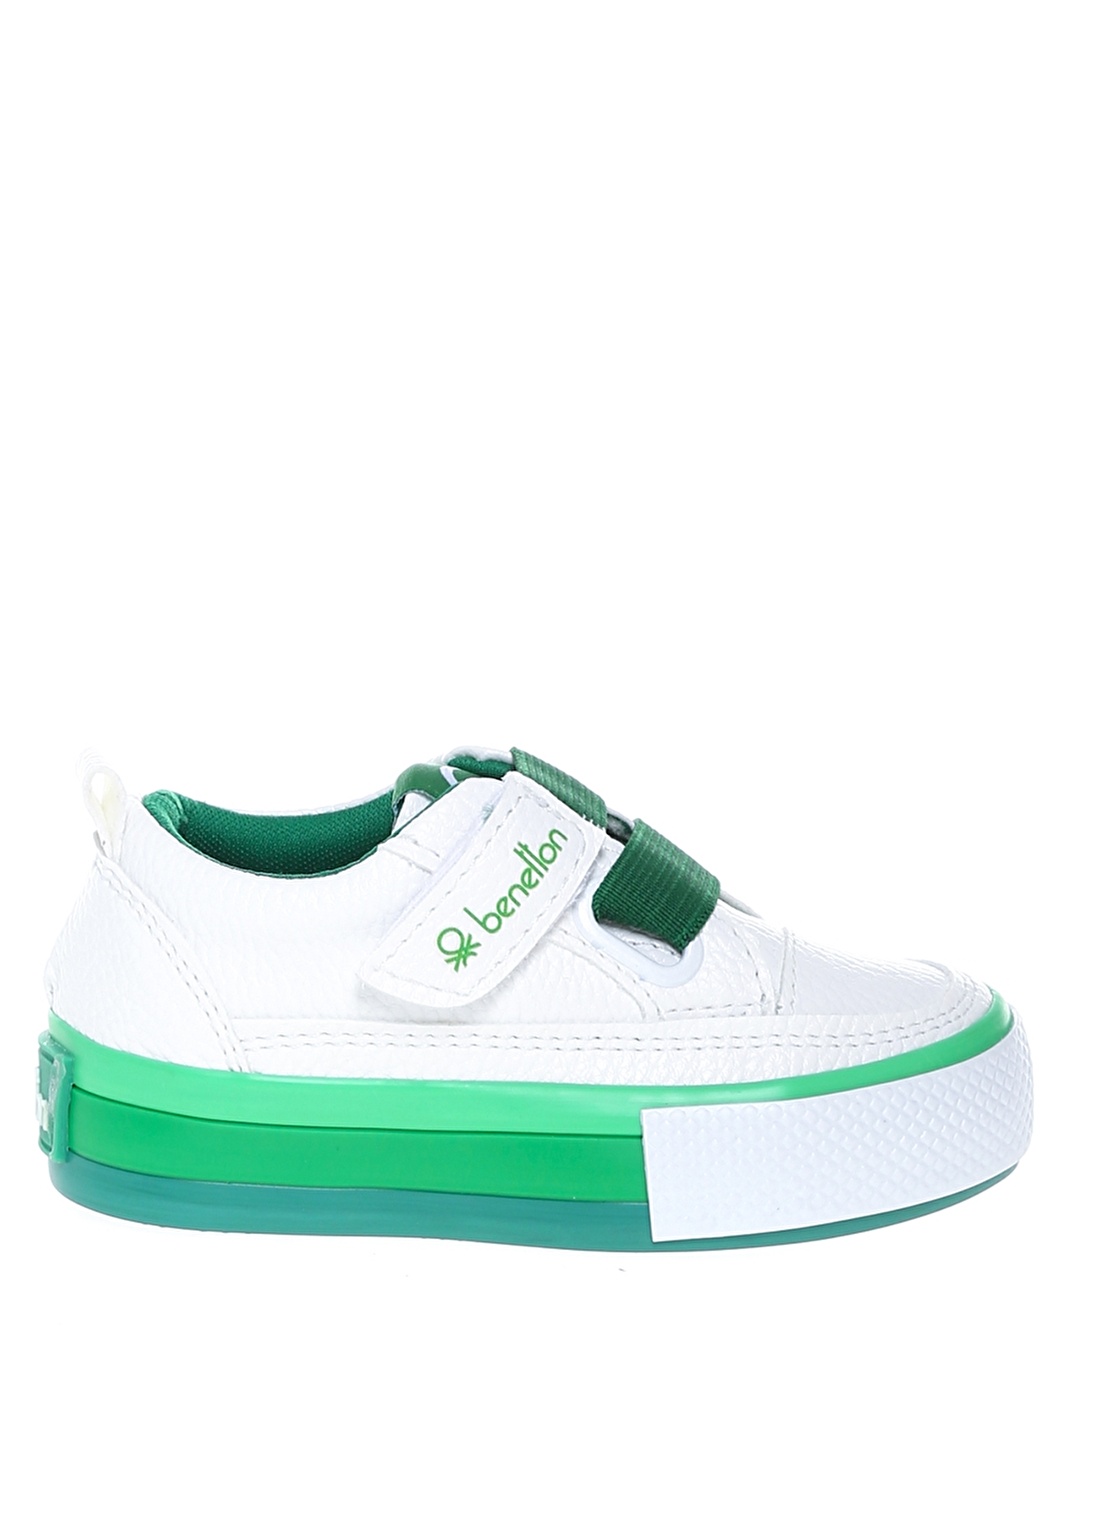 Benetton Beyaz - Yeşil Bebek Yürüyüş Ayakkabısı BN-30445 178--